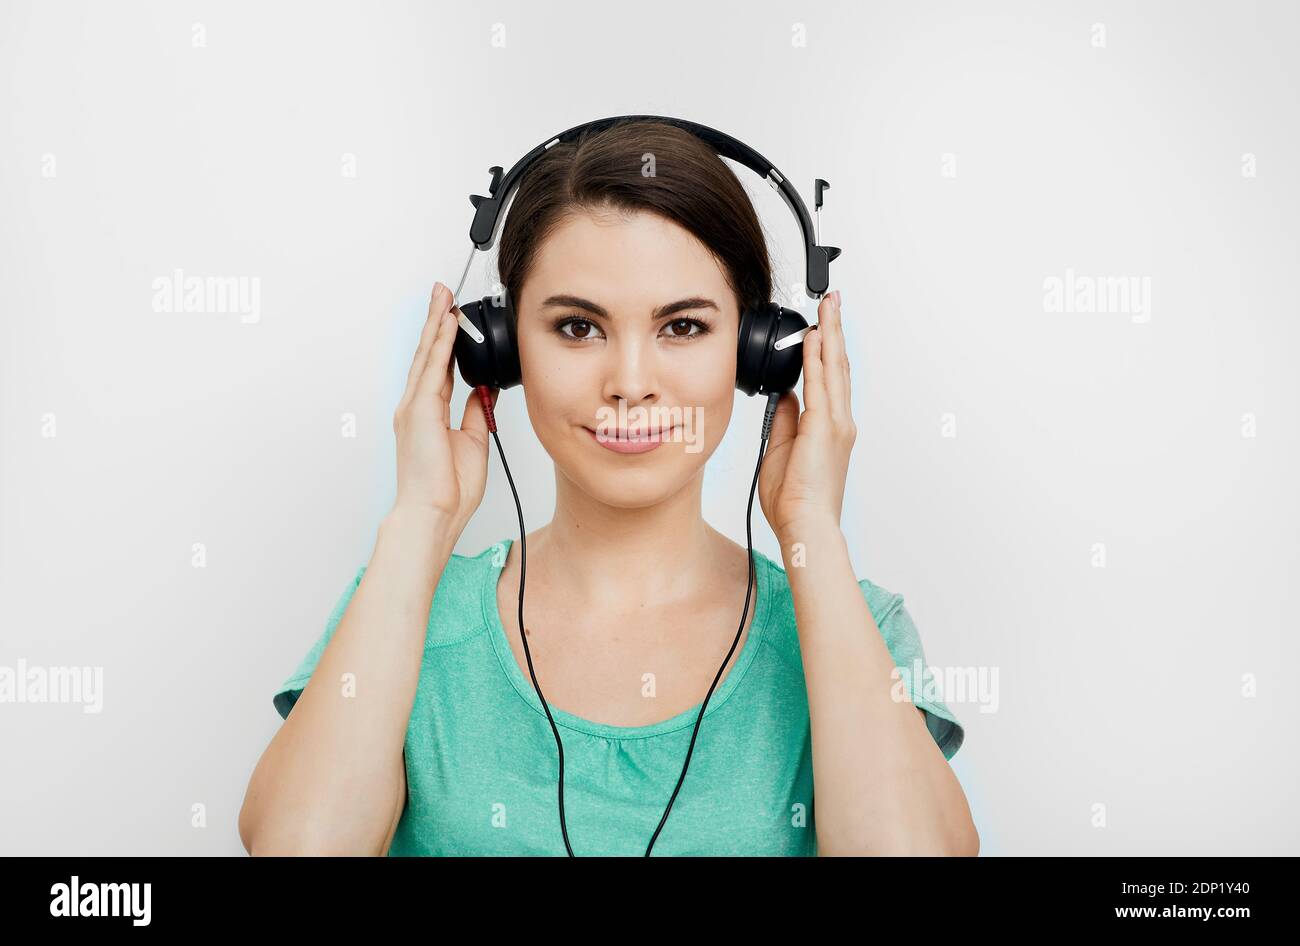 Audiometrie, Höruntersuchung. Mixed-Race Frau trägt spezielle Kopfhörer bekommen eine Hördiagnose. Überprüfen Sie Ihren Höreingsskund Stockfoto